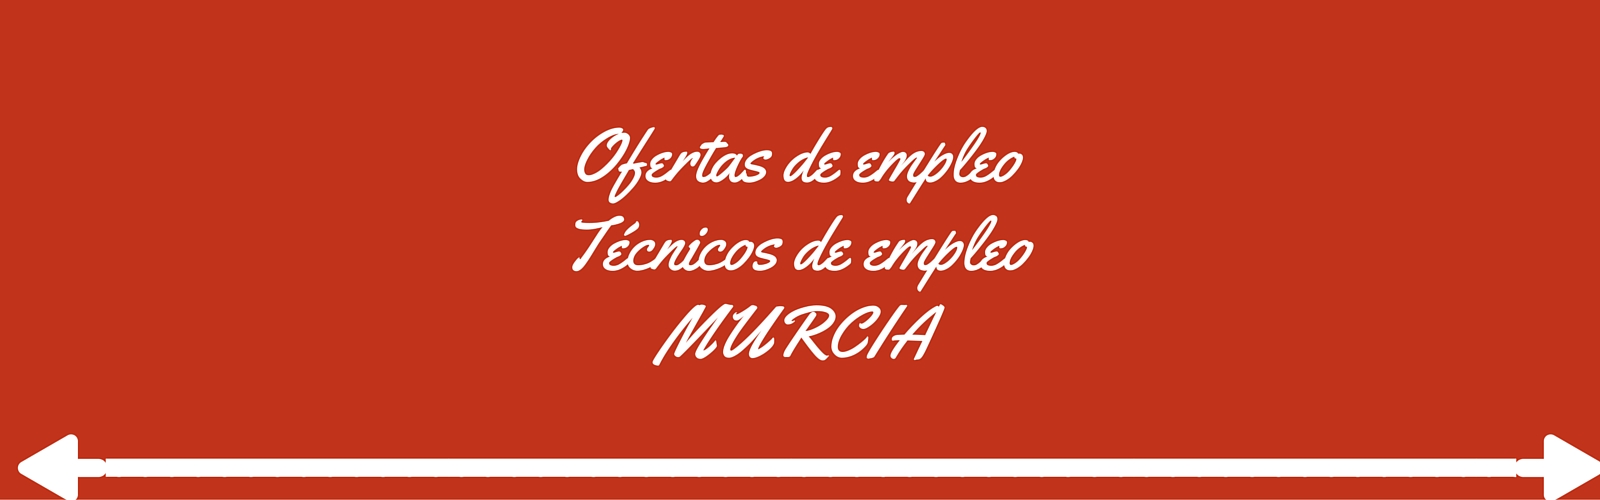 Oferta de empleo 40 técnicos especializados en activación y acompañamiento al empleo en Murcia